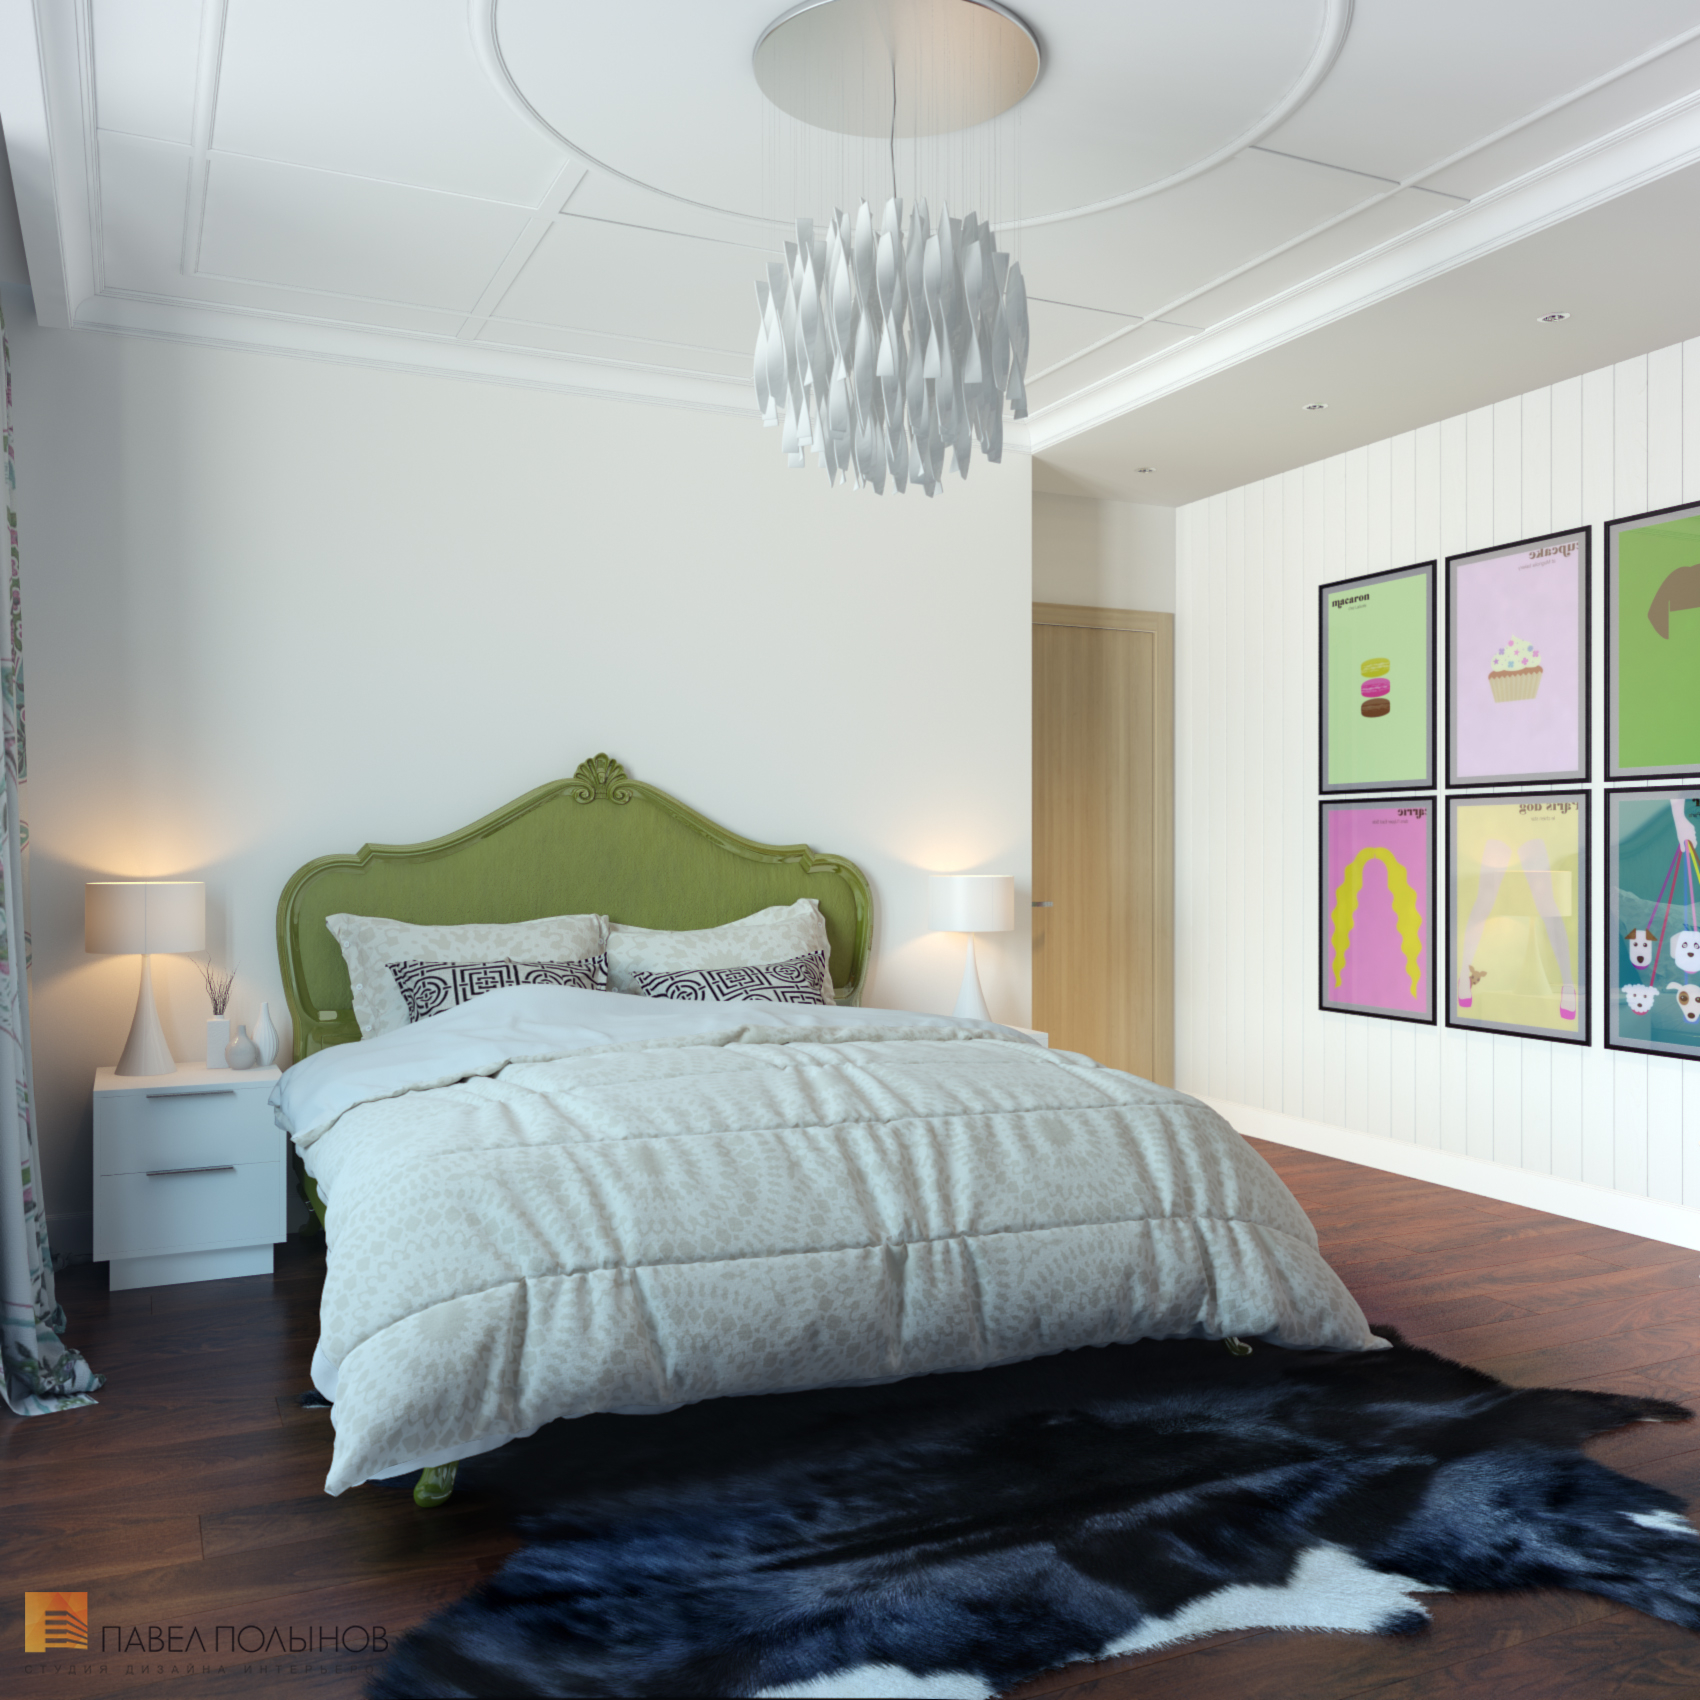 Фото спальня из проекта «Дизайн интерьера квартиры в ЖК «Ижора Парк»»